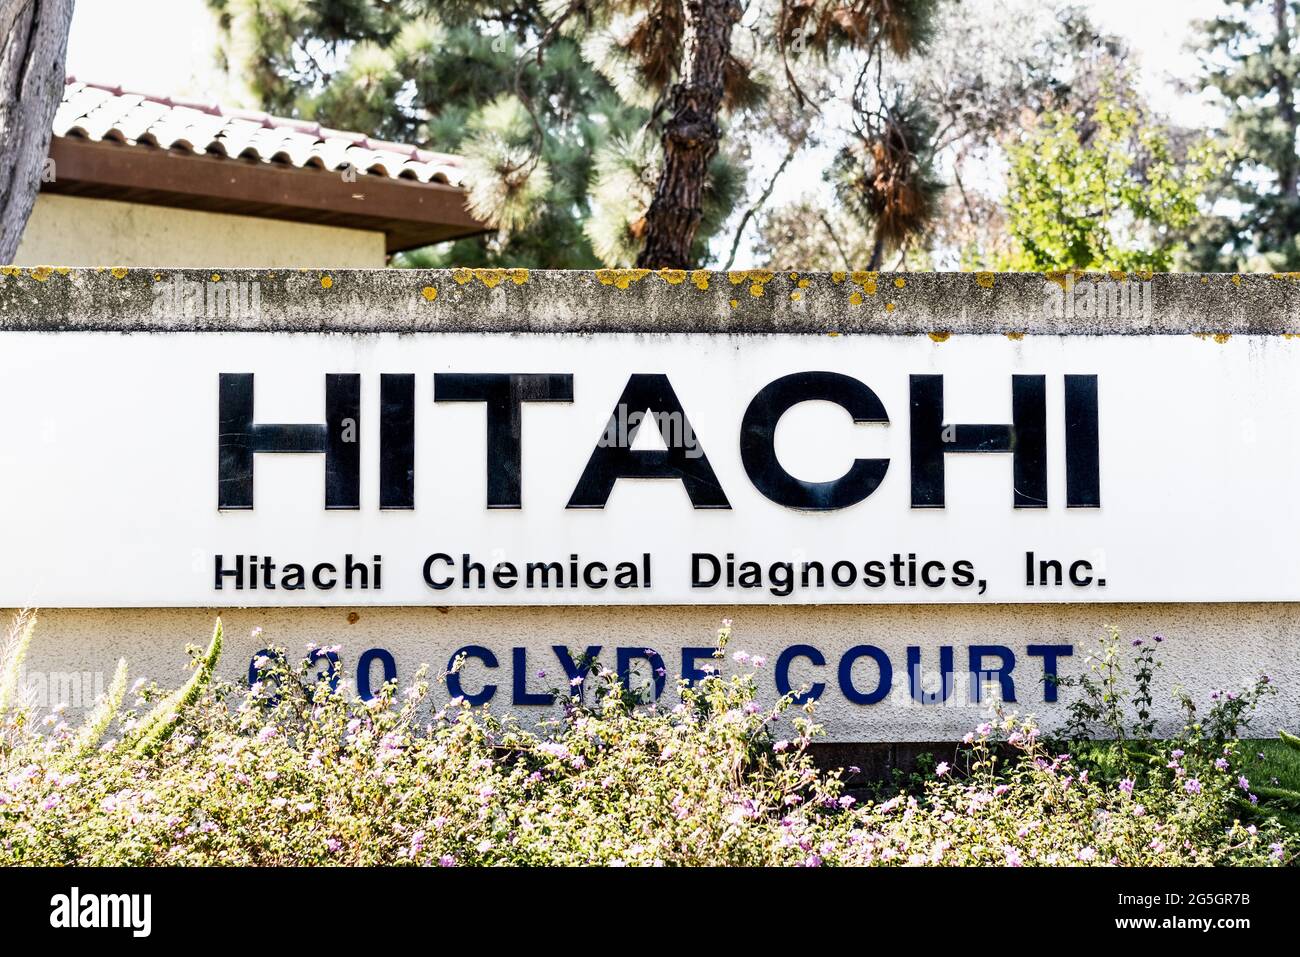 Sep 26, 2020 Mountain View / CA / USA - Hitachi Chemical Diagnostics logo en su sede en Silicon Valley; Hitachi, Ltd. Es una multina japonesa Foto de stock